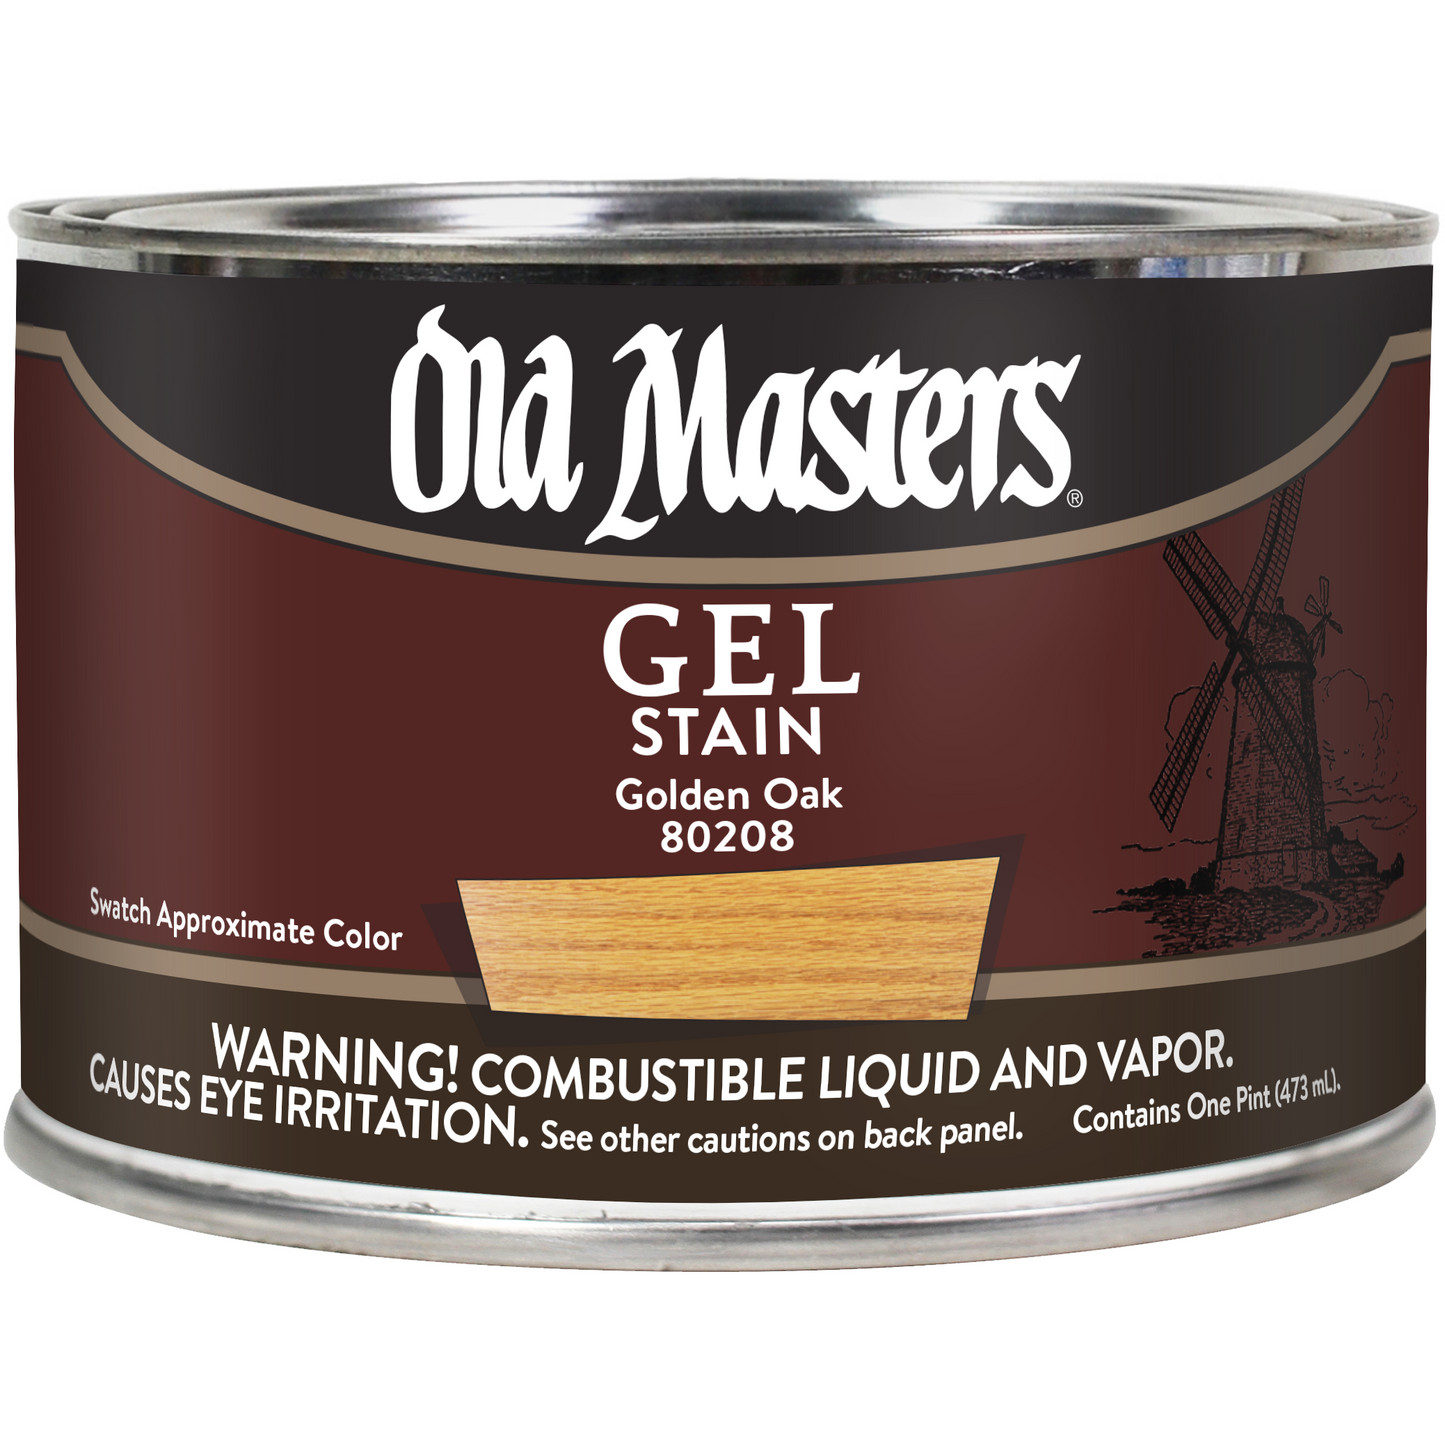 Old Masters Gel Stain - Golden Oak